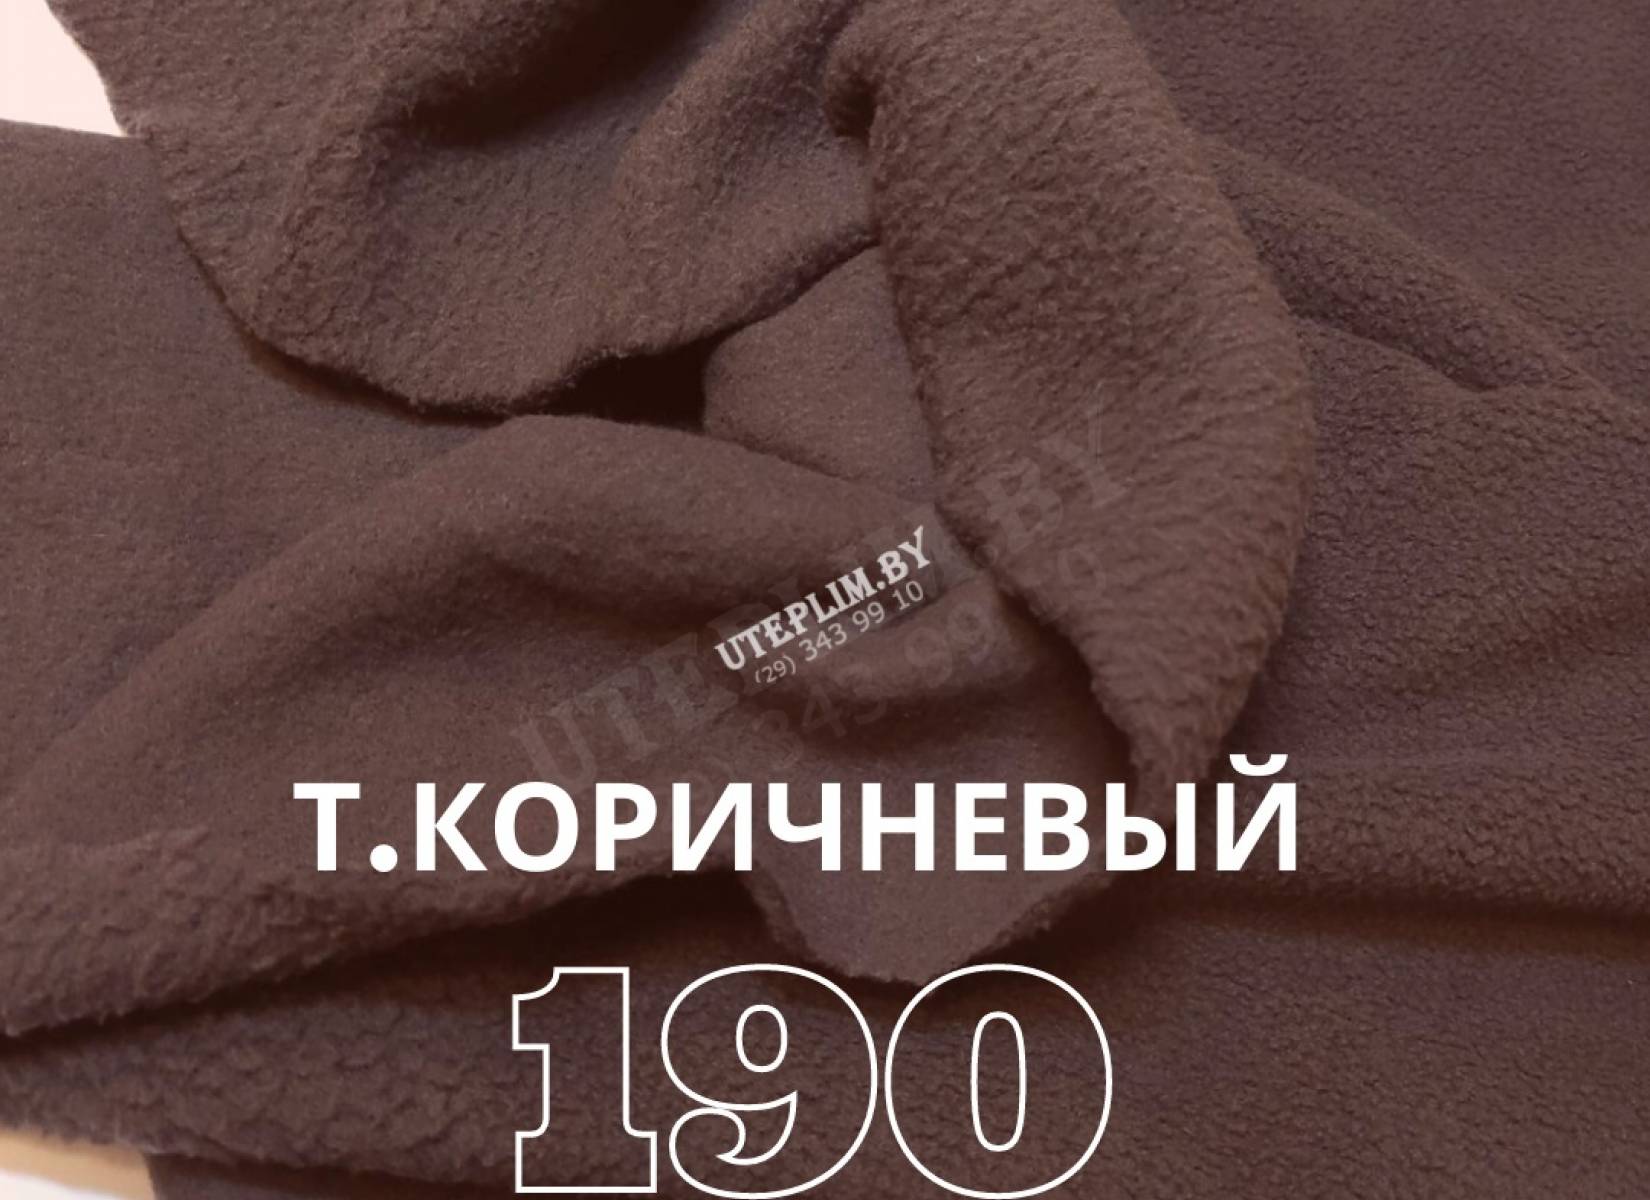 190 антипиллинг - т.коричневый